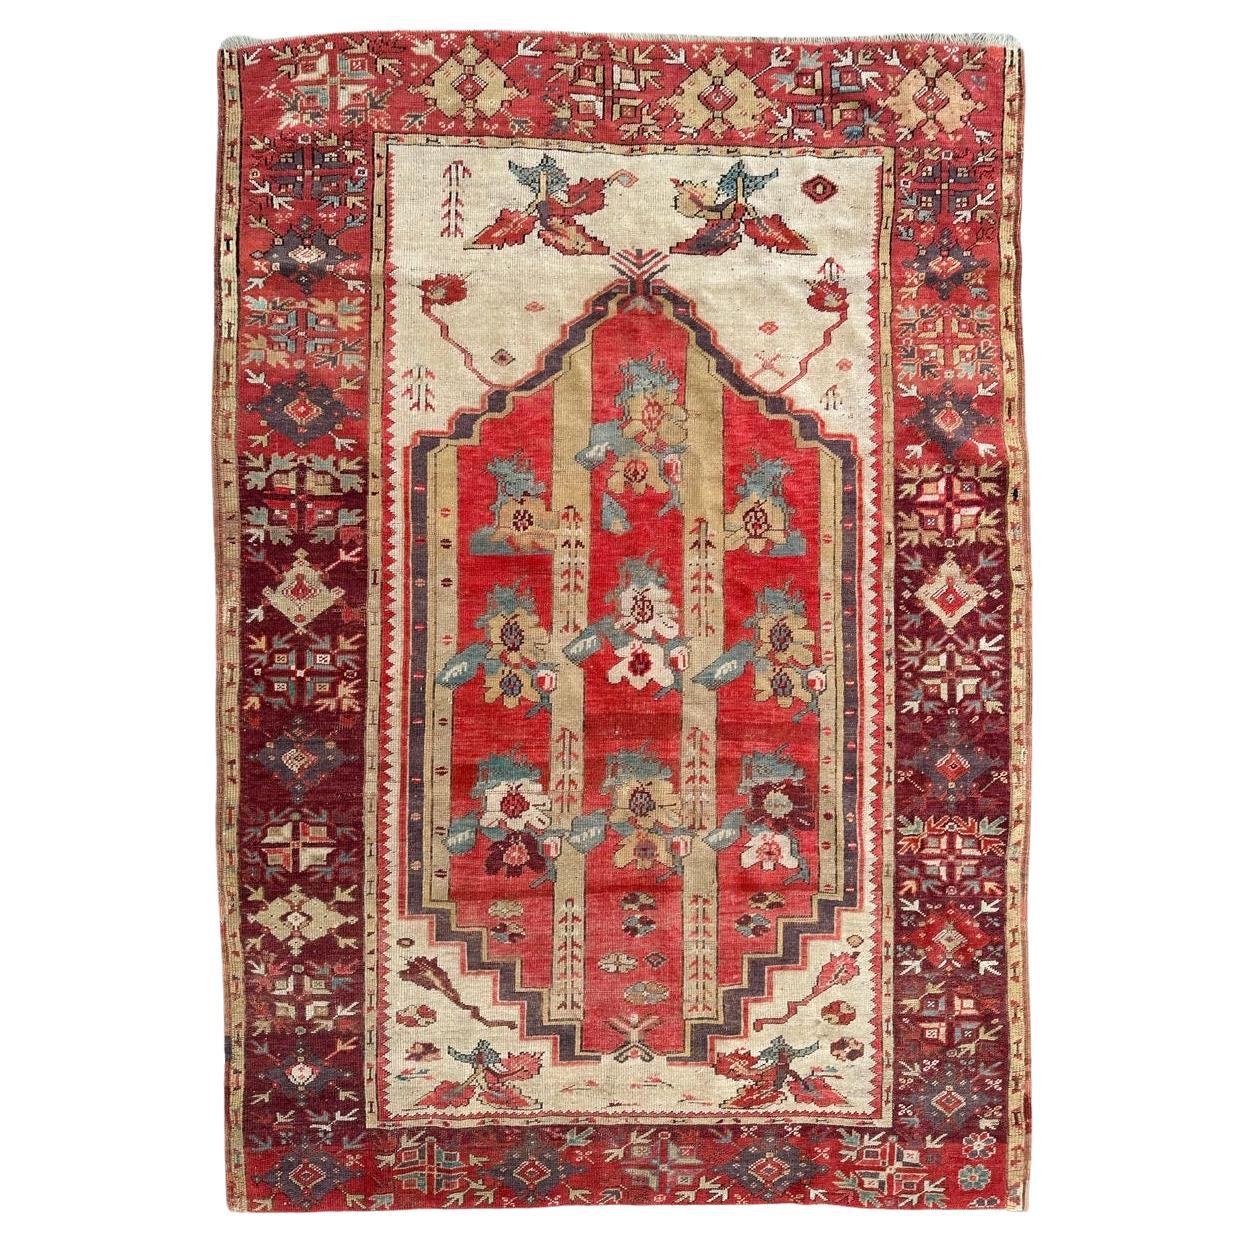 Bobyrug's Hübscher antiker türkischer Teppich aus dem frühen 19. Jahrhundert 